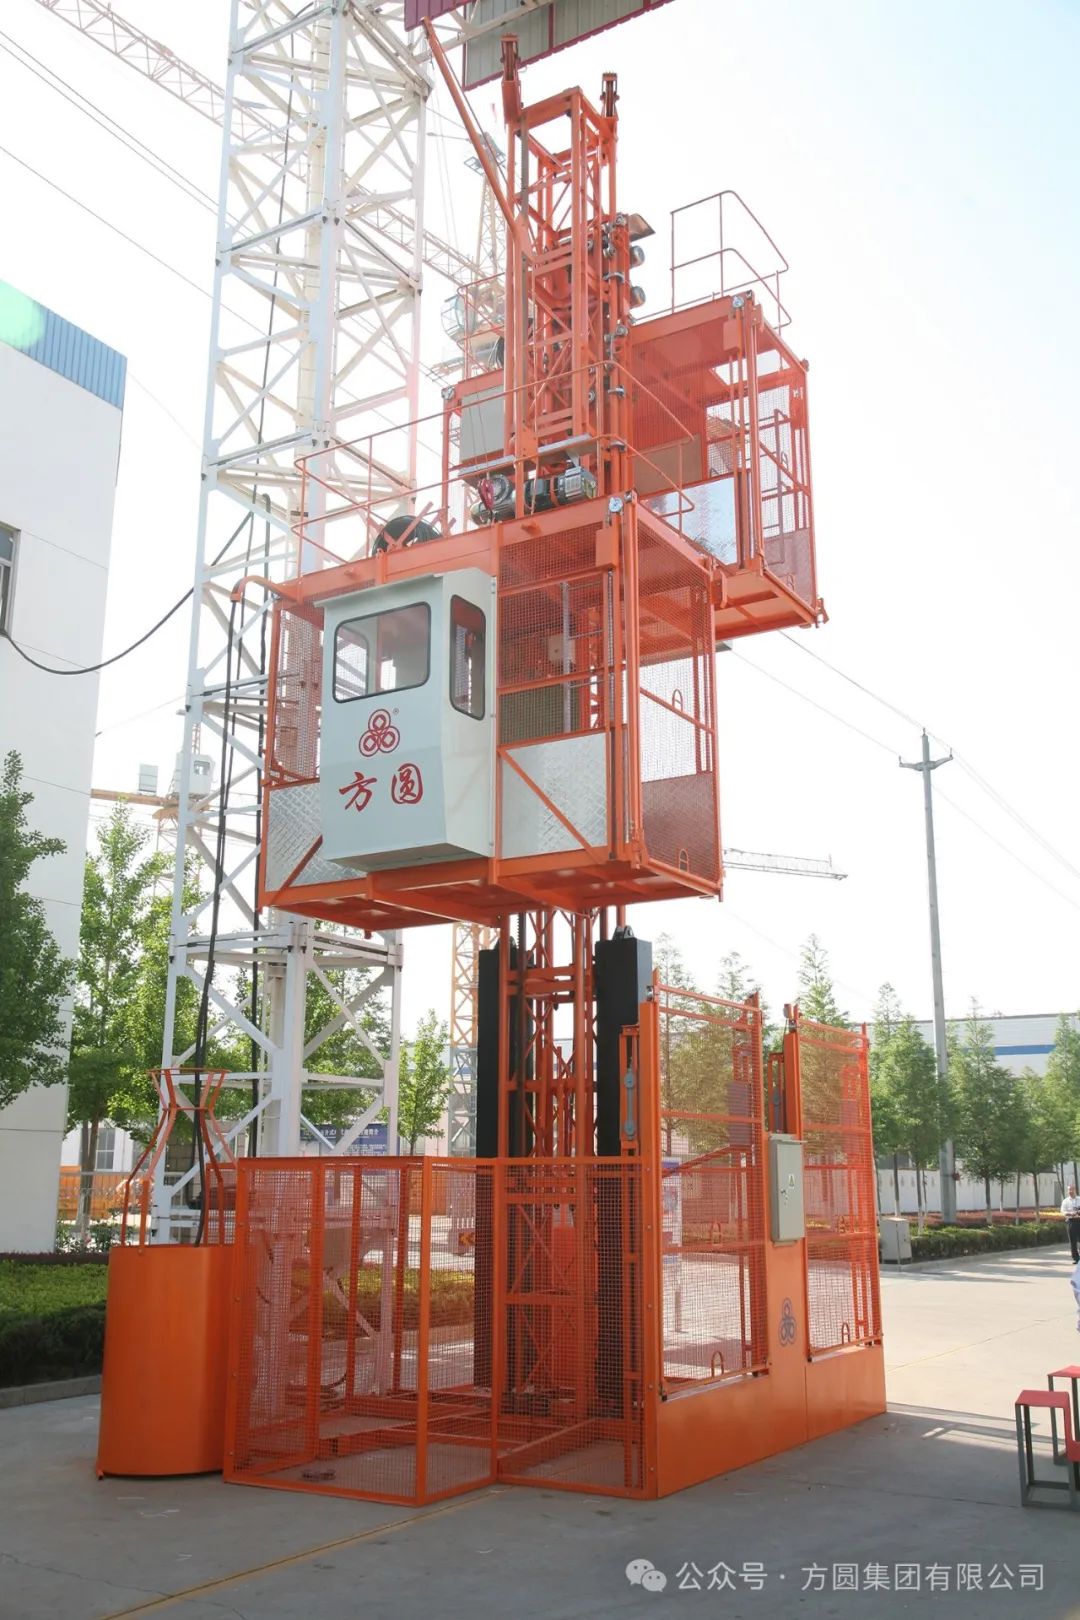 Fangyuan SC200/200 Construction Lift Helps the Construction of Zhongxin Eco-city in Tianjin